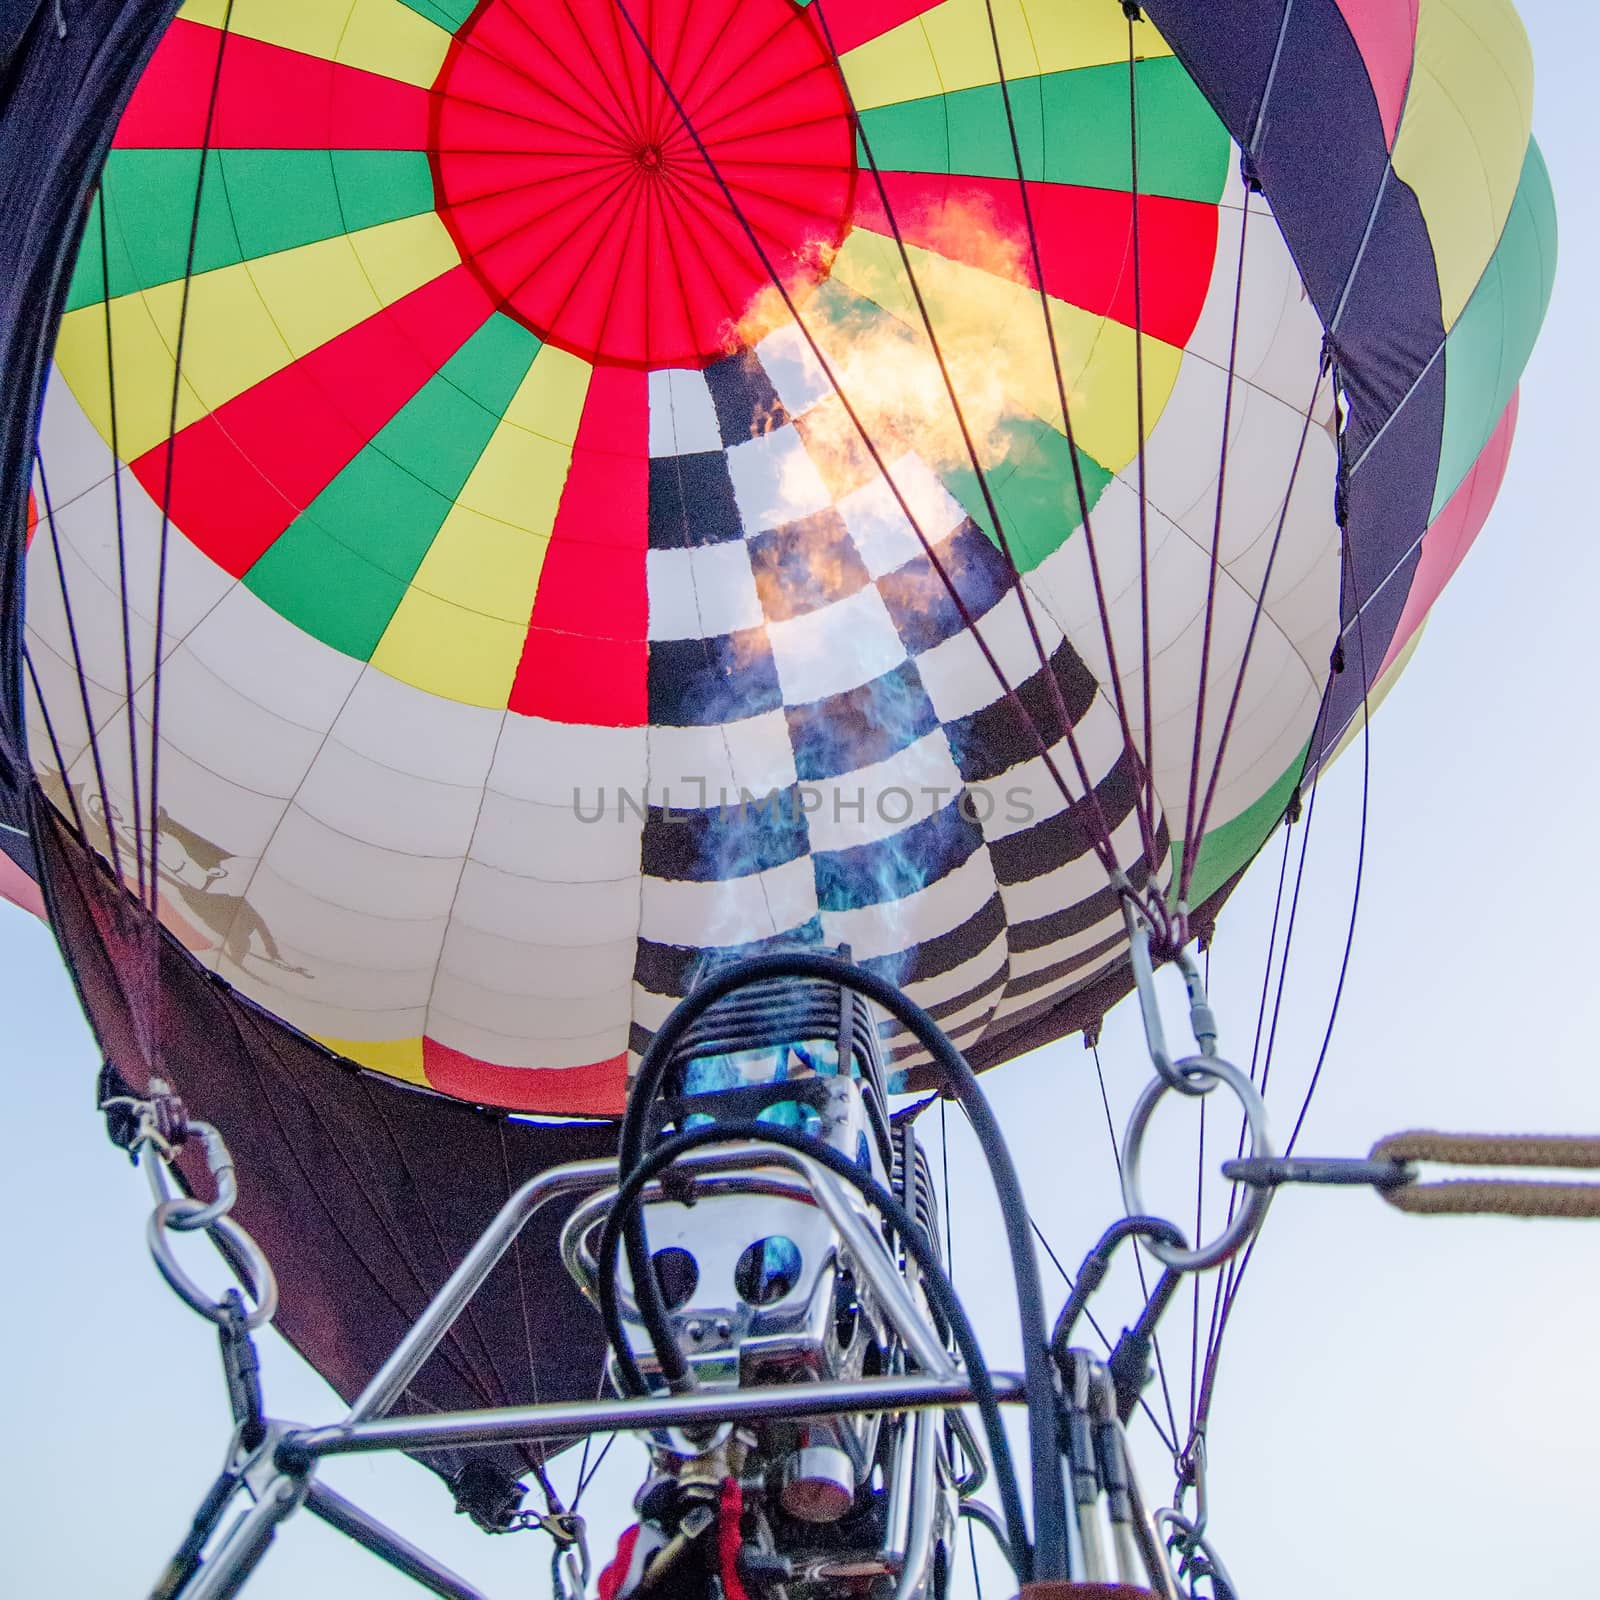 Fire heats the air inside a hot air balloon at balloon festival  by digidreamgrafix